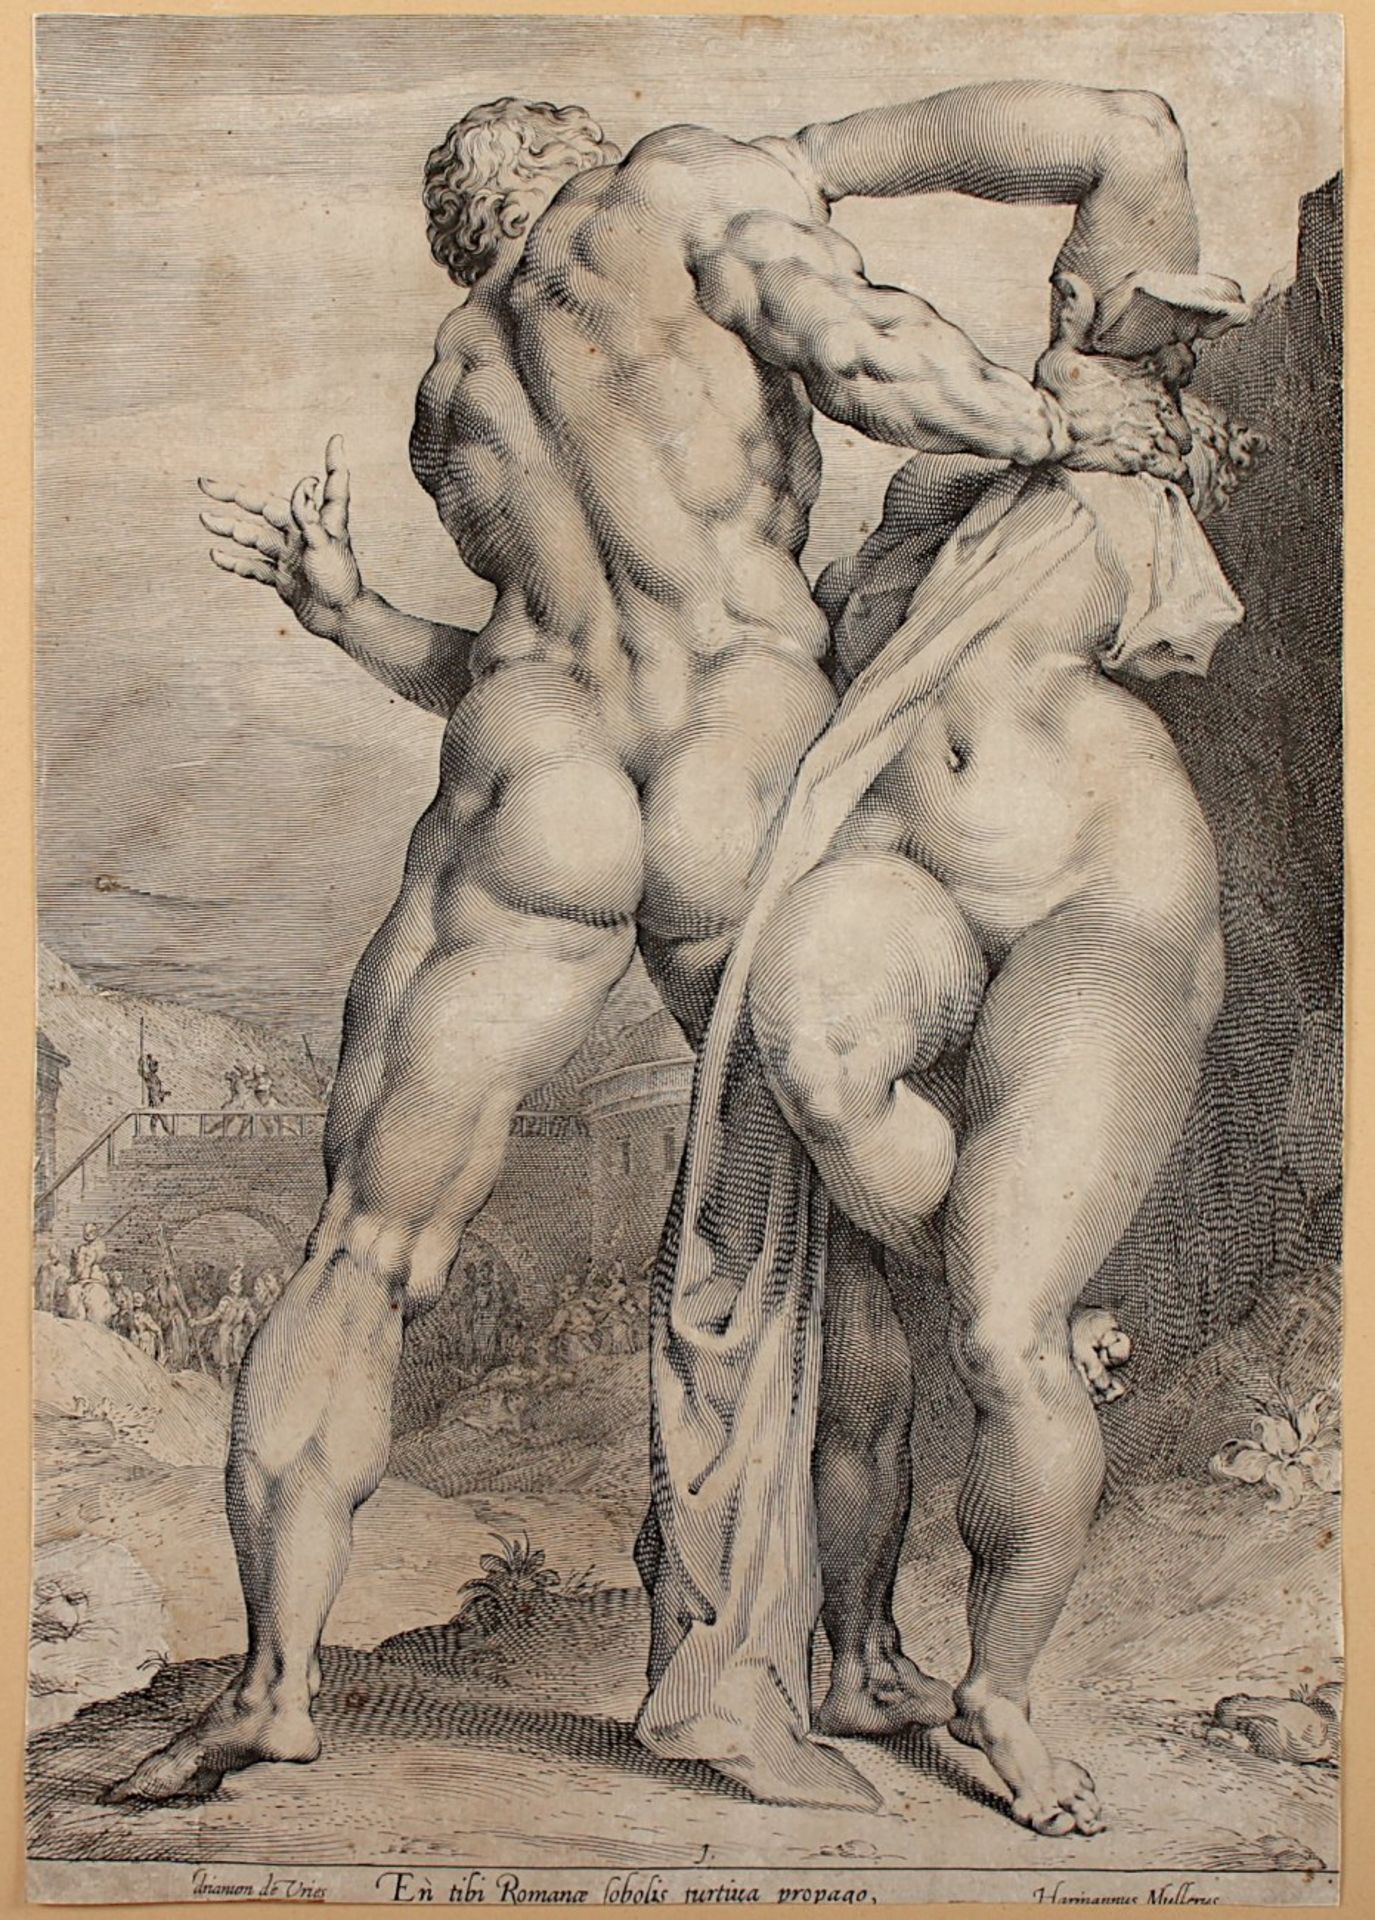 MULLER, Jan, nach Adriaen de Vries Muller: (1571-1628), "Der Raub der Sabinerin", En tibi Romanae